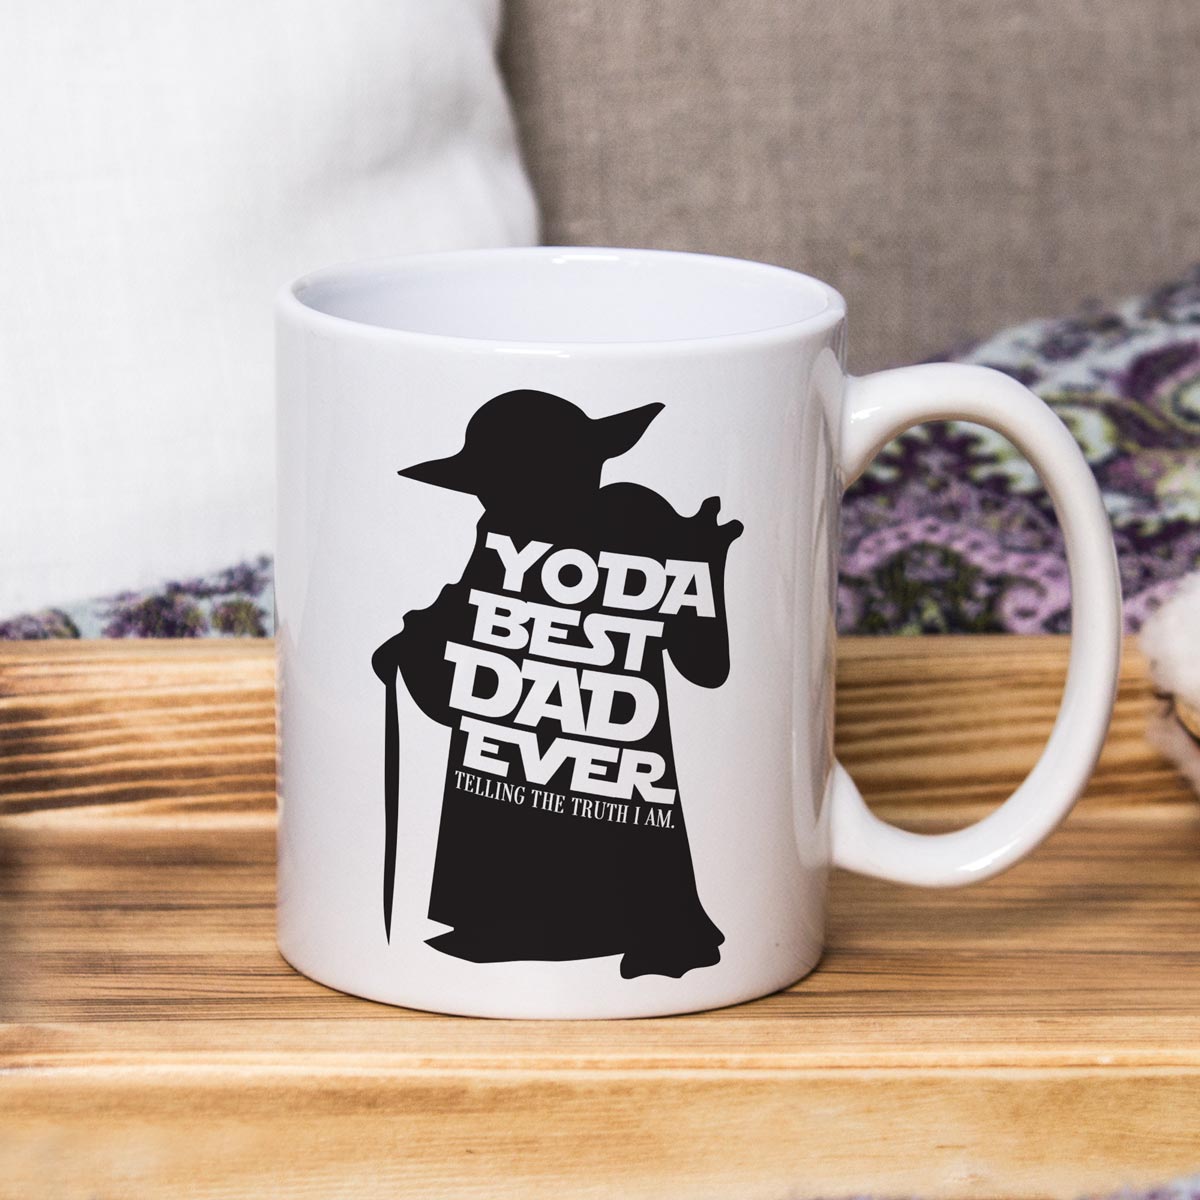 Yoda Best Dad Ever Coffee Mug-1